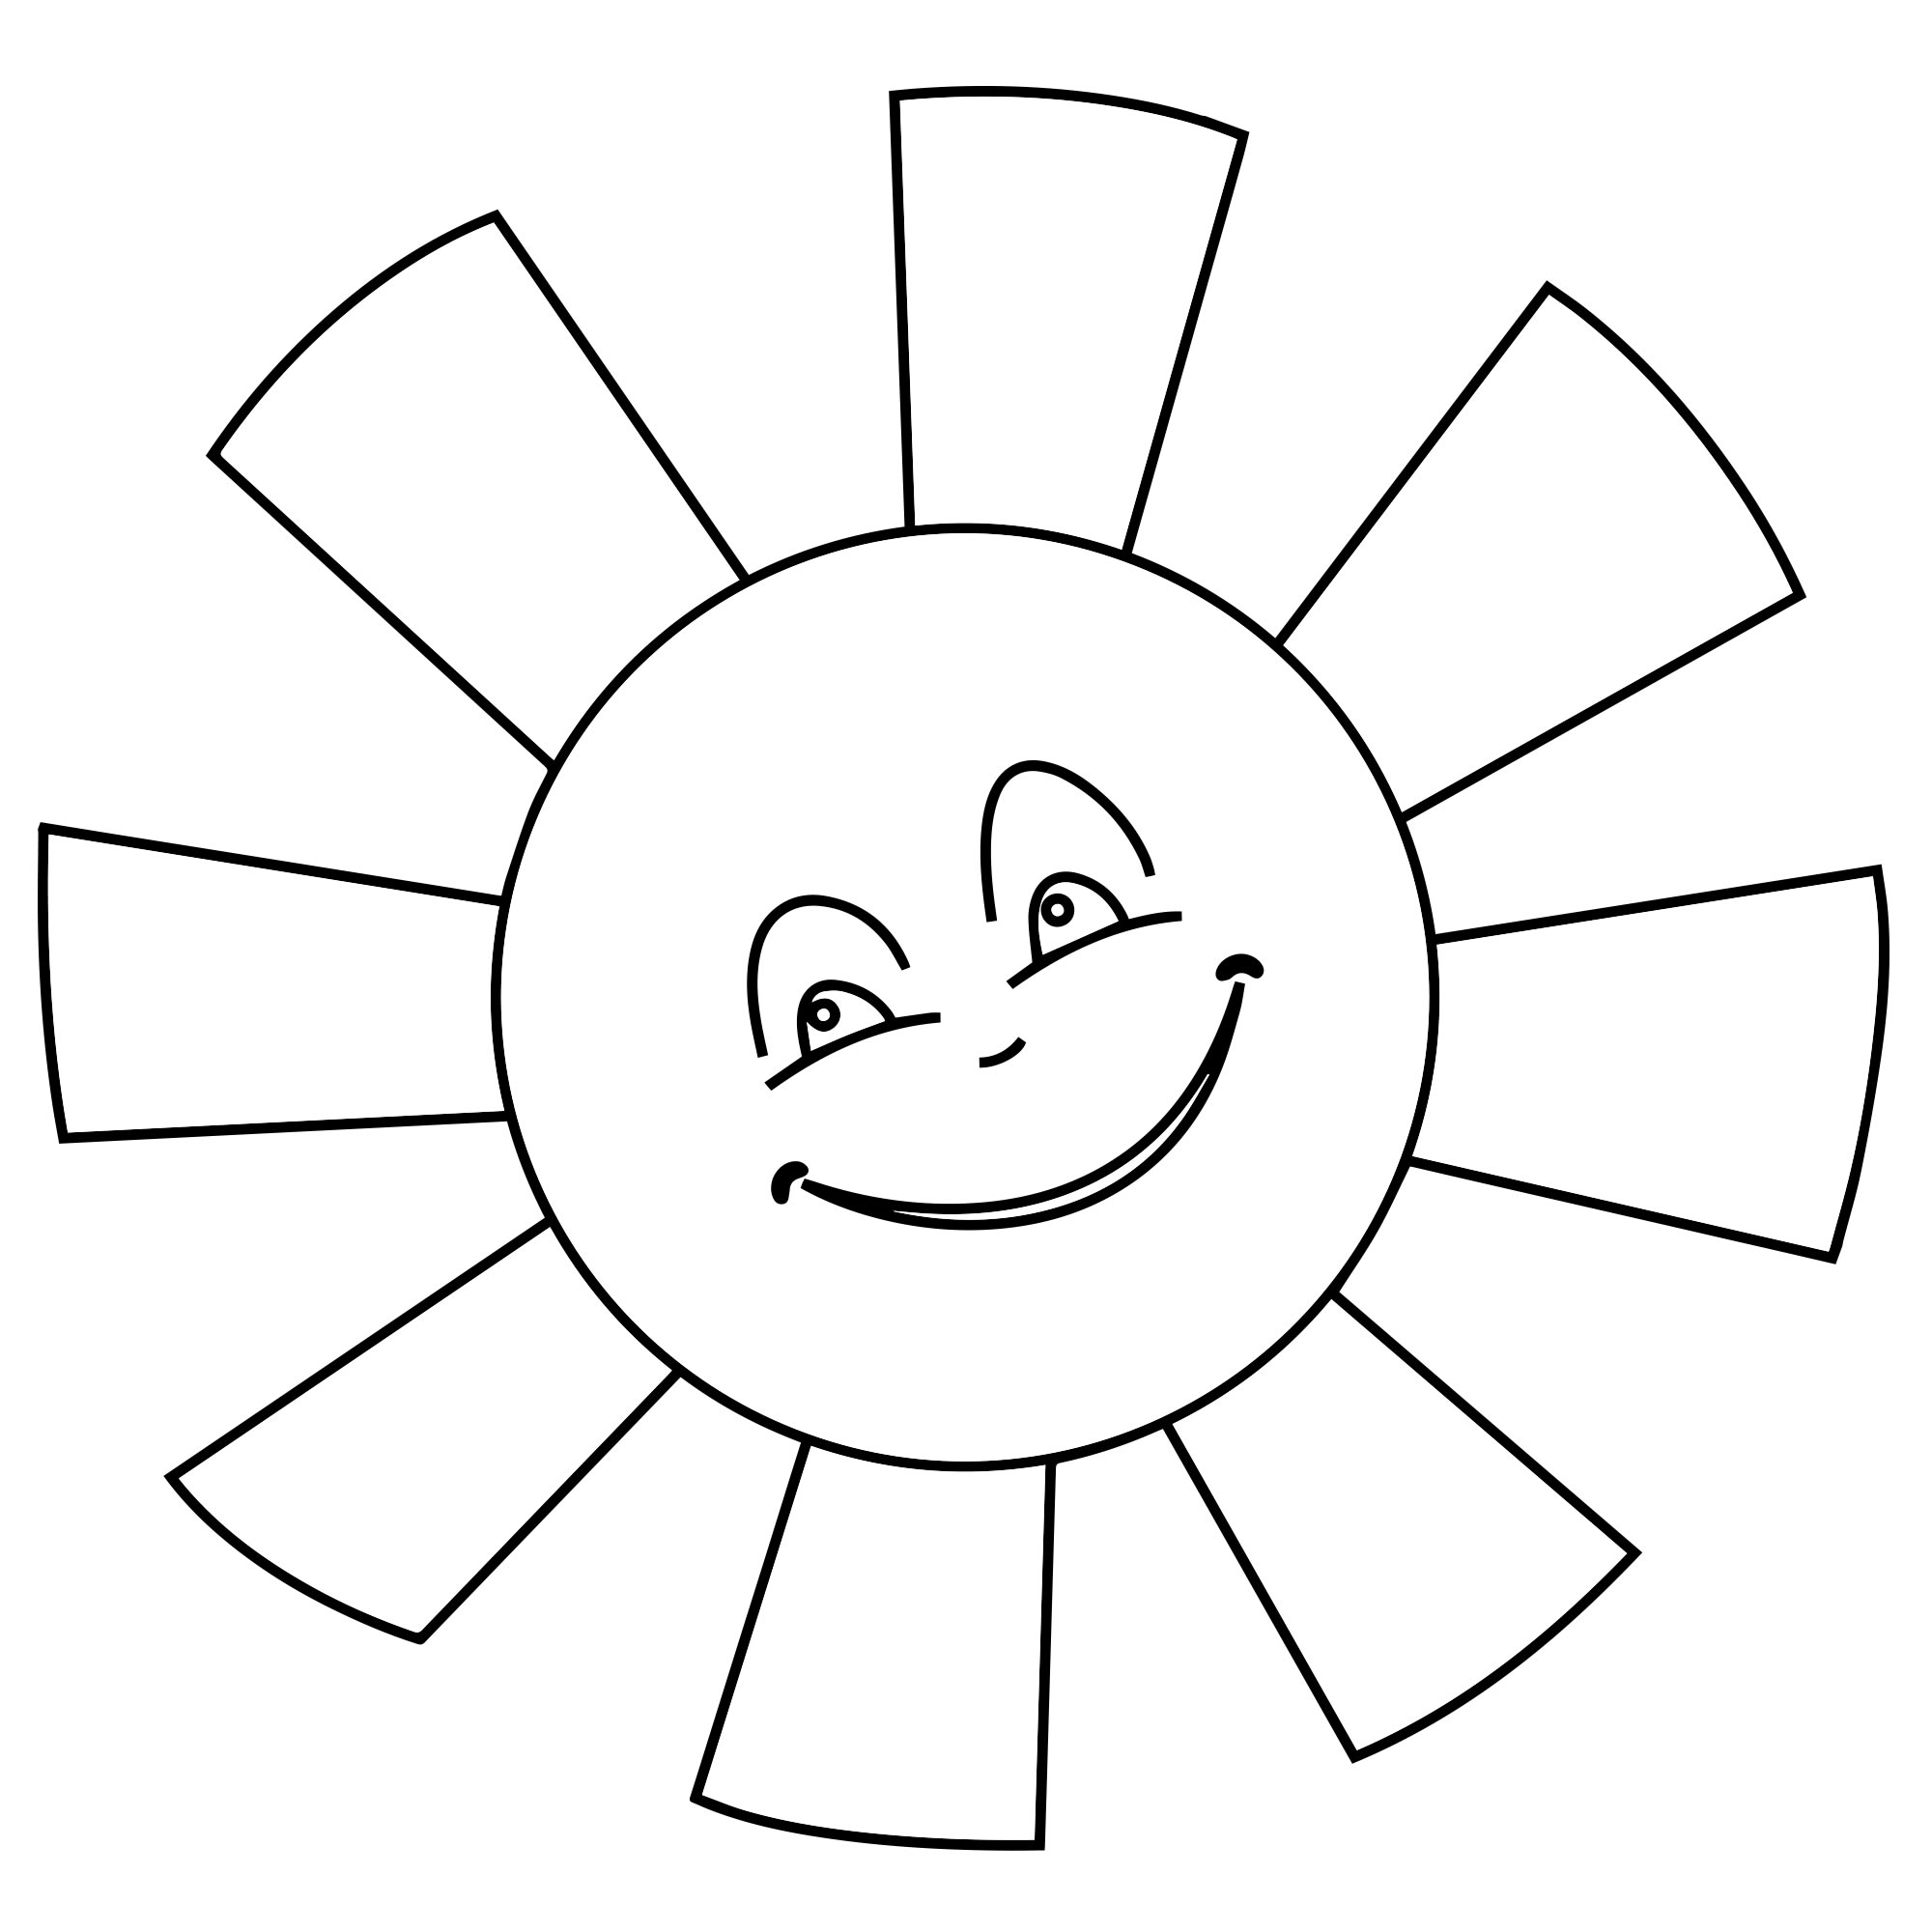 Картинка раскраска солнышко с улыбкой для детей